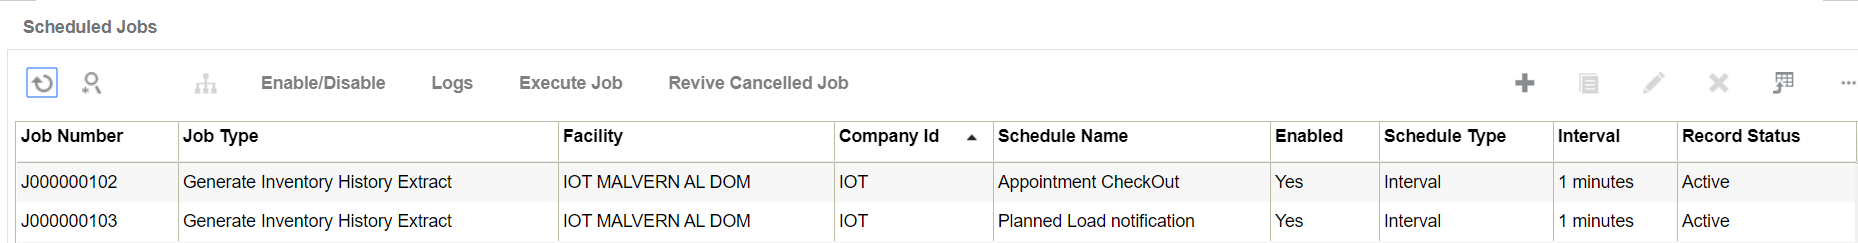 Description of scheduled_jobs.png follows